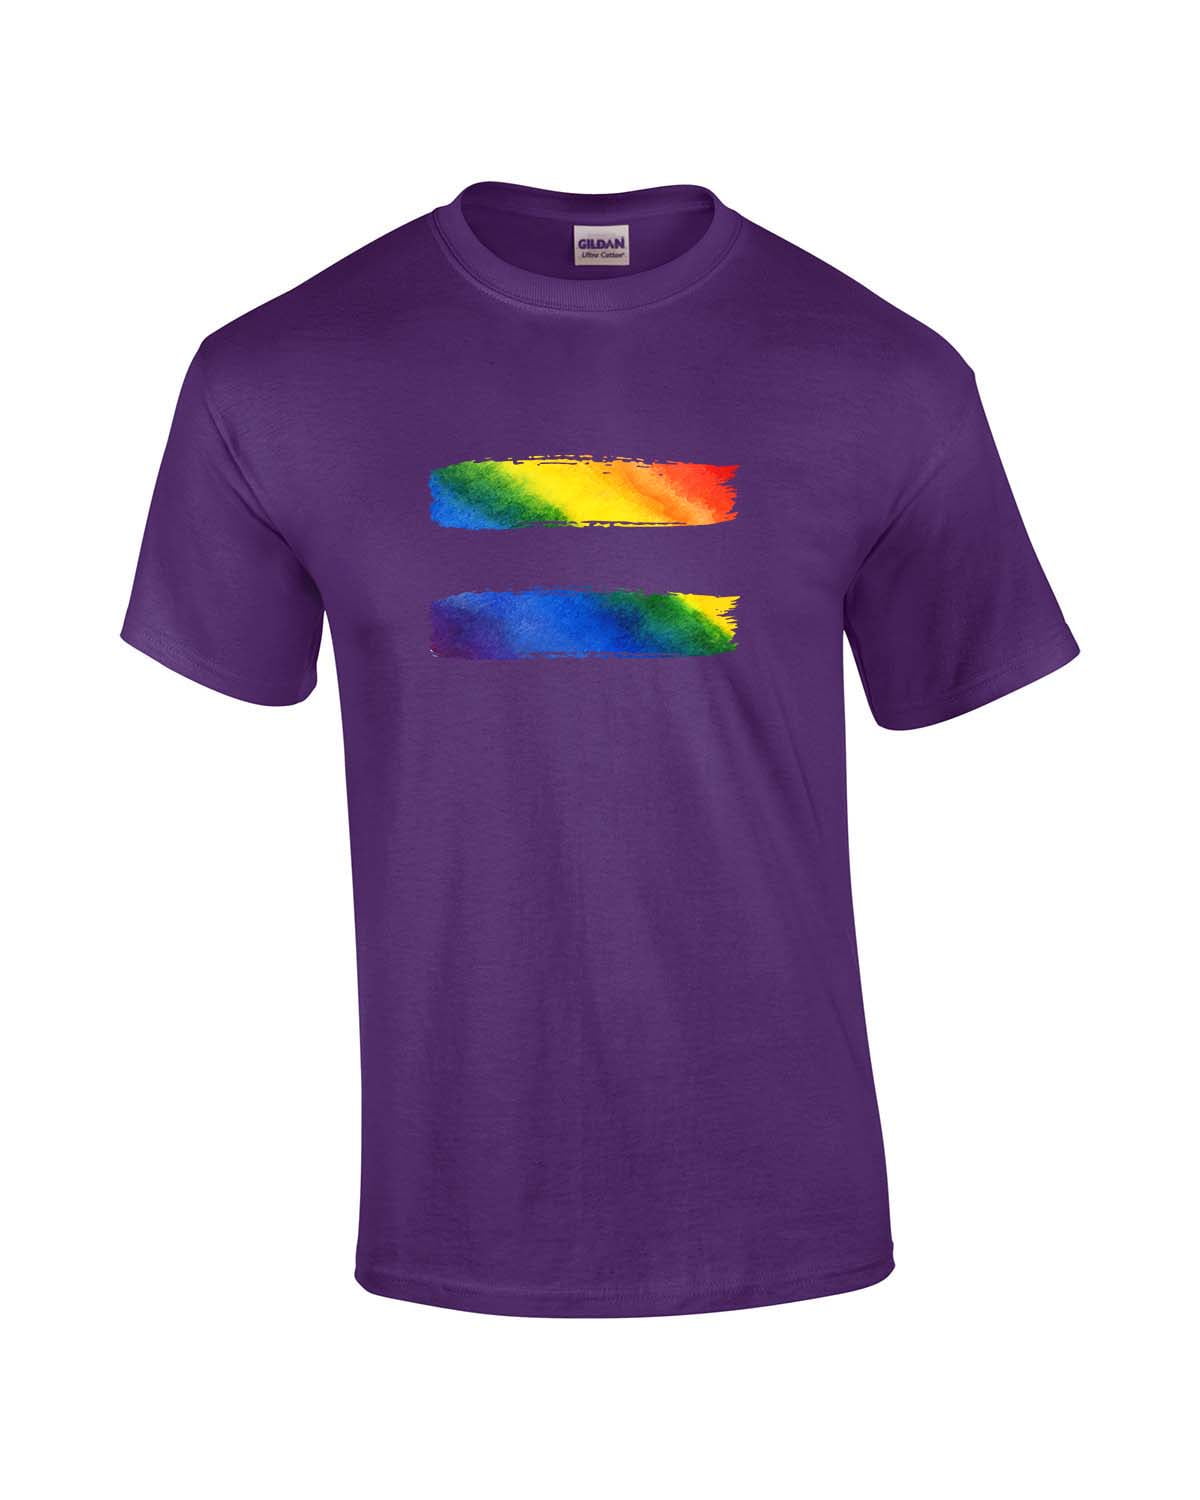 Gay Pride Rainbow Shirt/Retro Gay Pride Tee/Groovy Pride Tshirt/LGBTQ Equality Equal Rights/Unisex